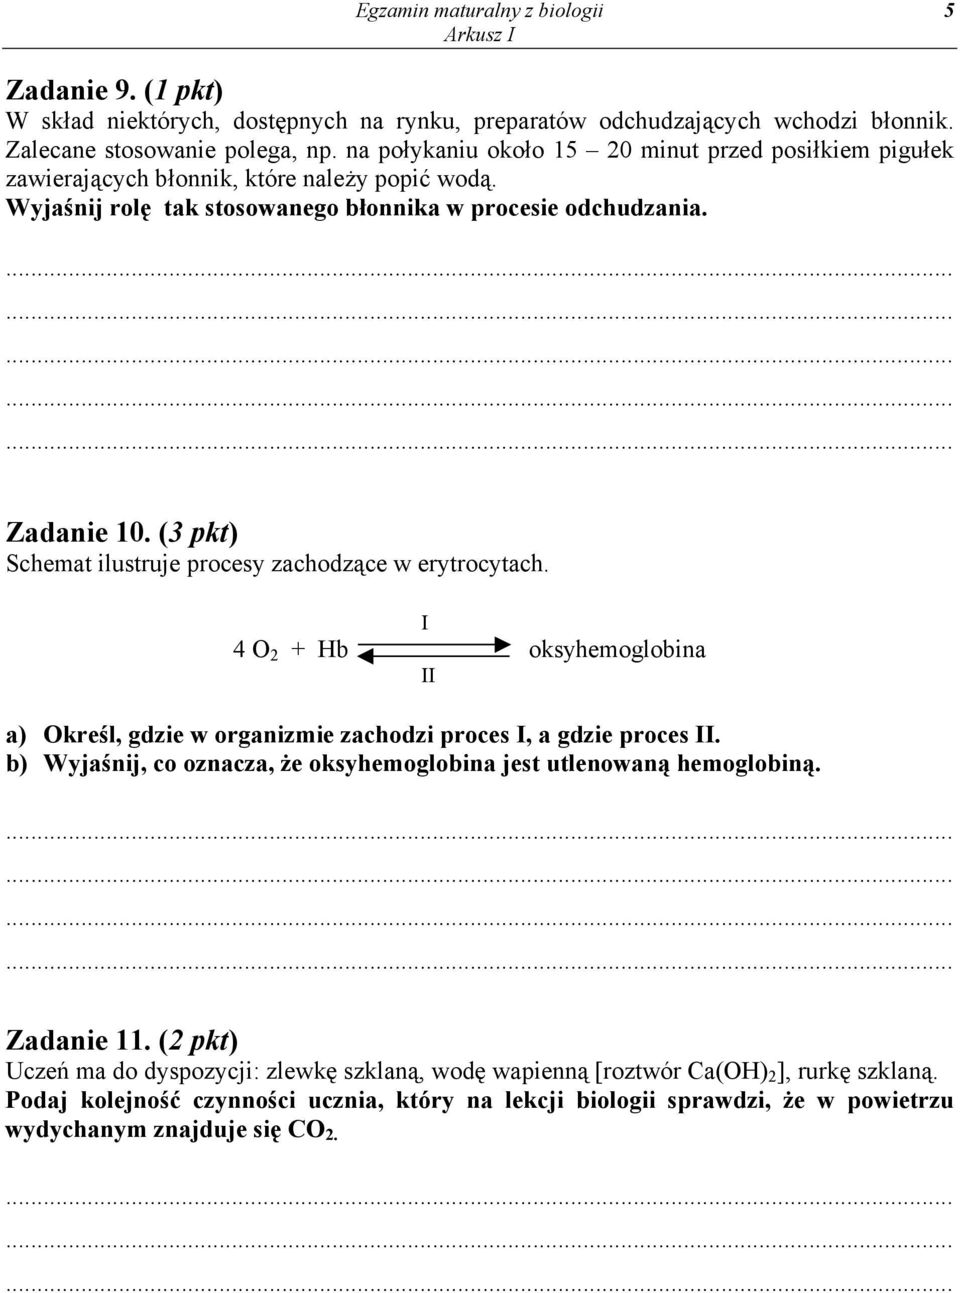 (3 pkt) Schemat ilustruje procesy zachodzące w erytrocytach. I 4 O 2 + Hb oksyhemoglobina II a) Określ, gdzie w organizmie zachodzi proces I, a gdzie proces II.